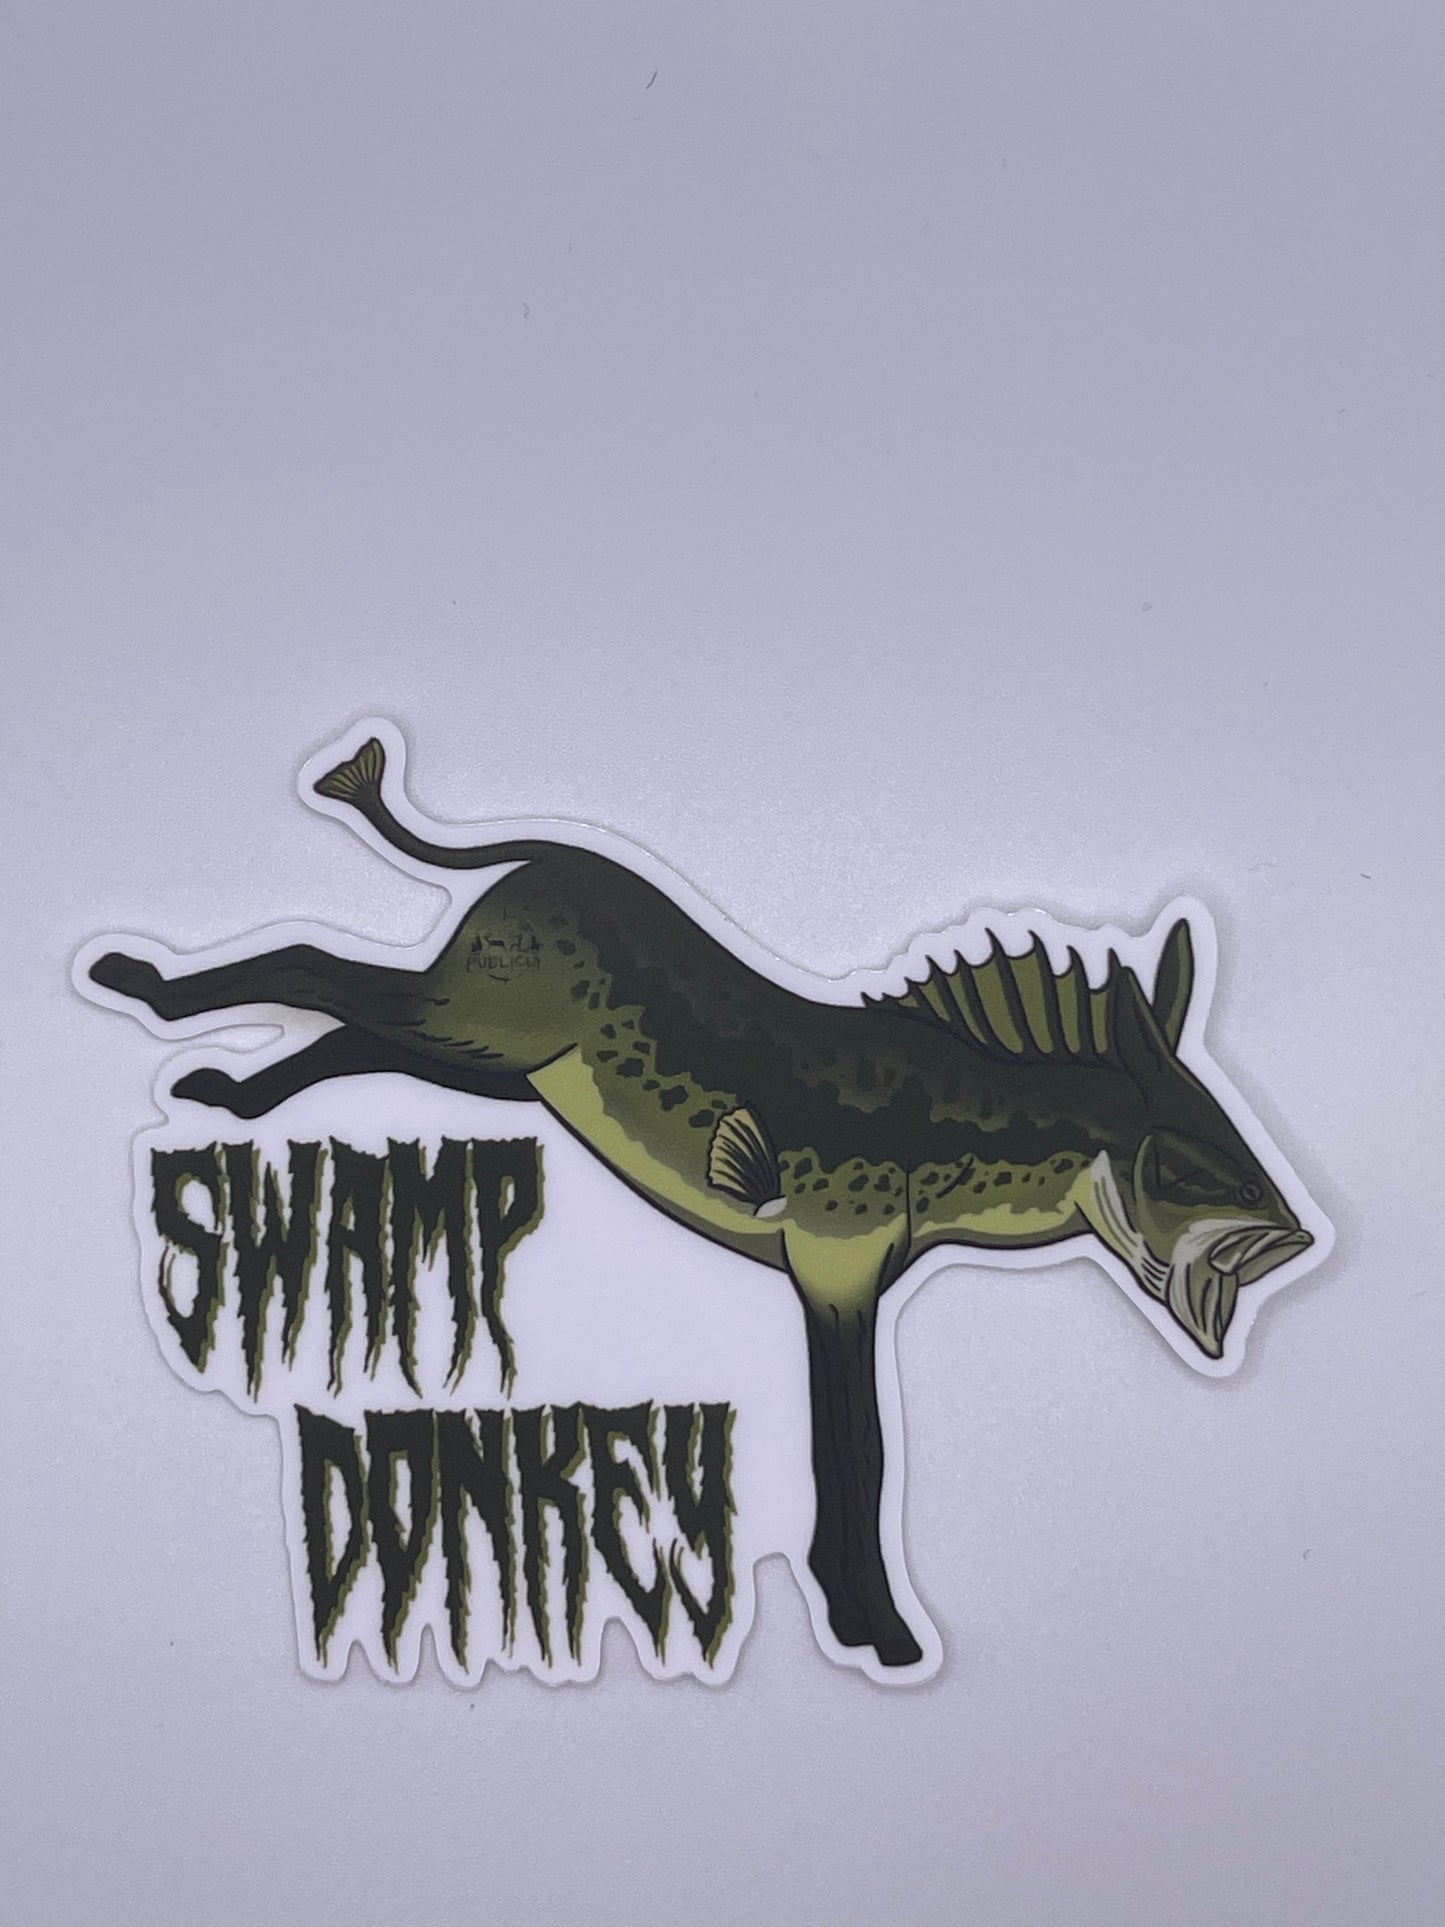 Swamp Donkey sticker